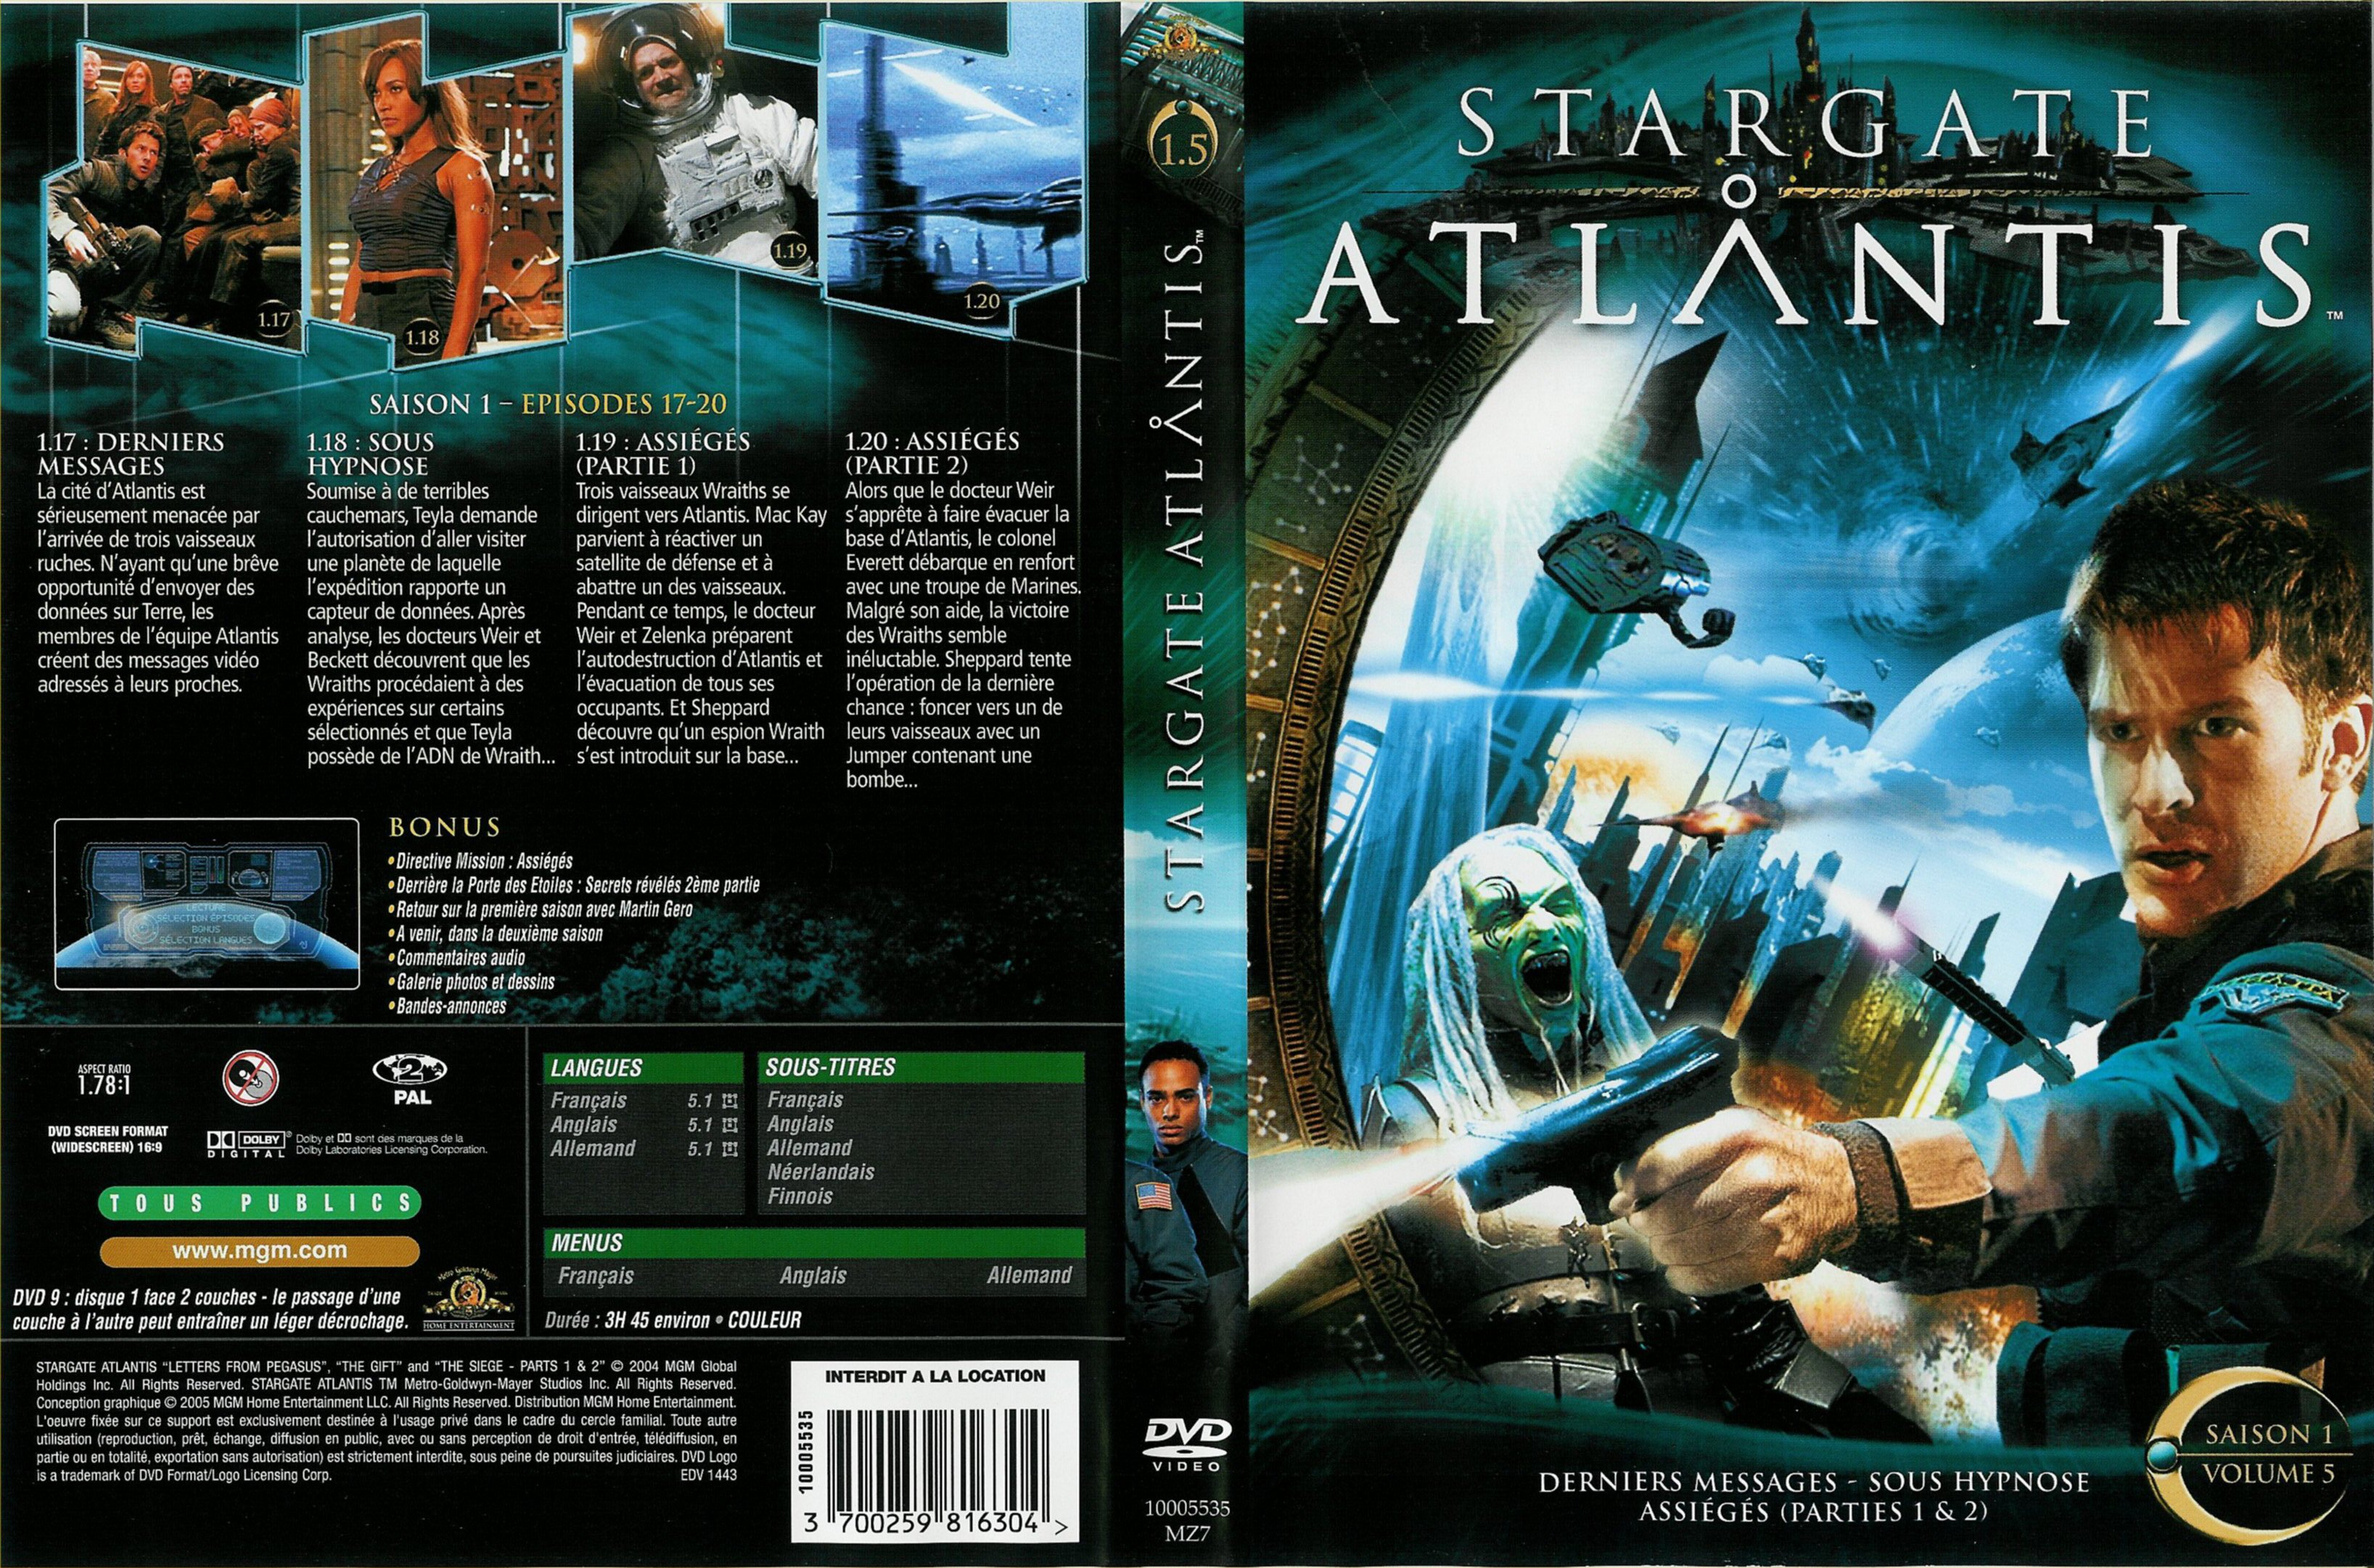 Jaquette DVD Stargate Atlantis saison 1 vol 5